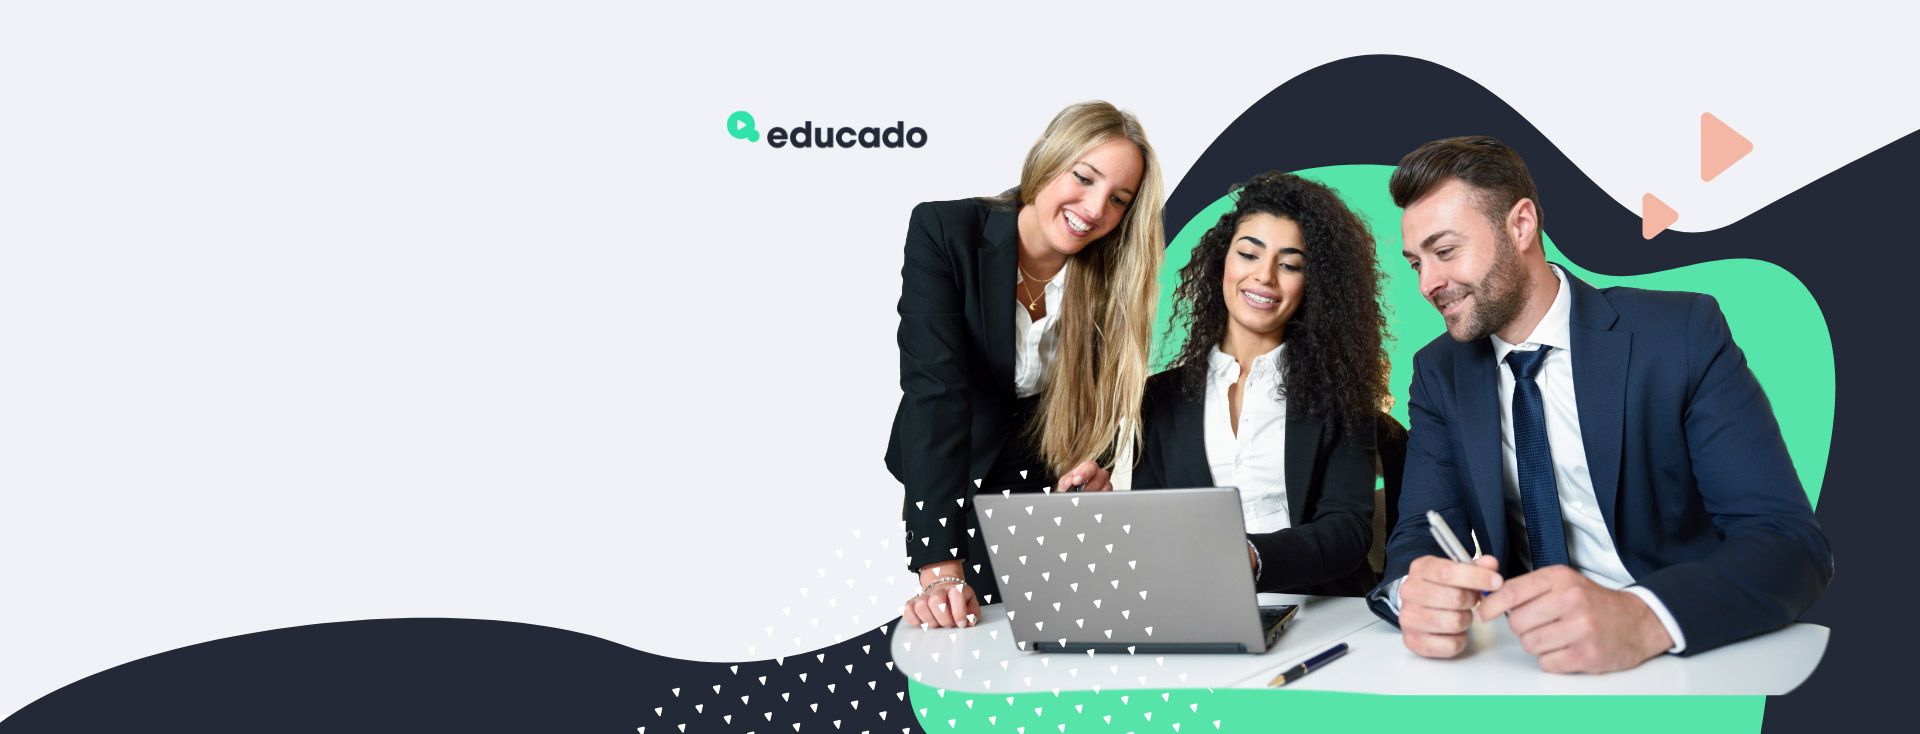 Poznaj naszą nową platformę edukacyjną Educado.pl